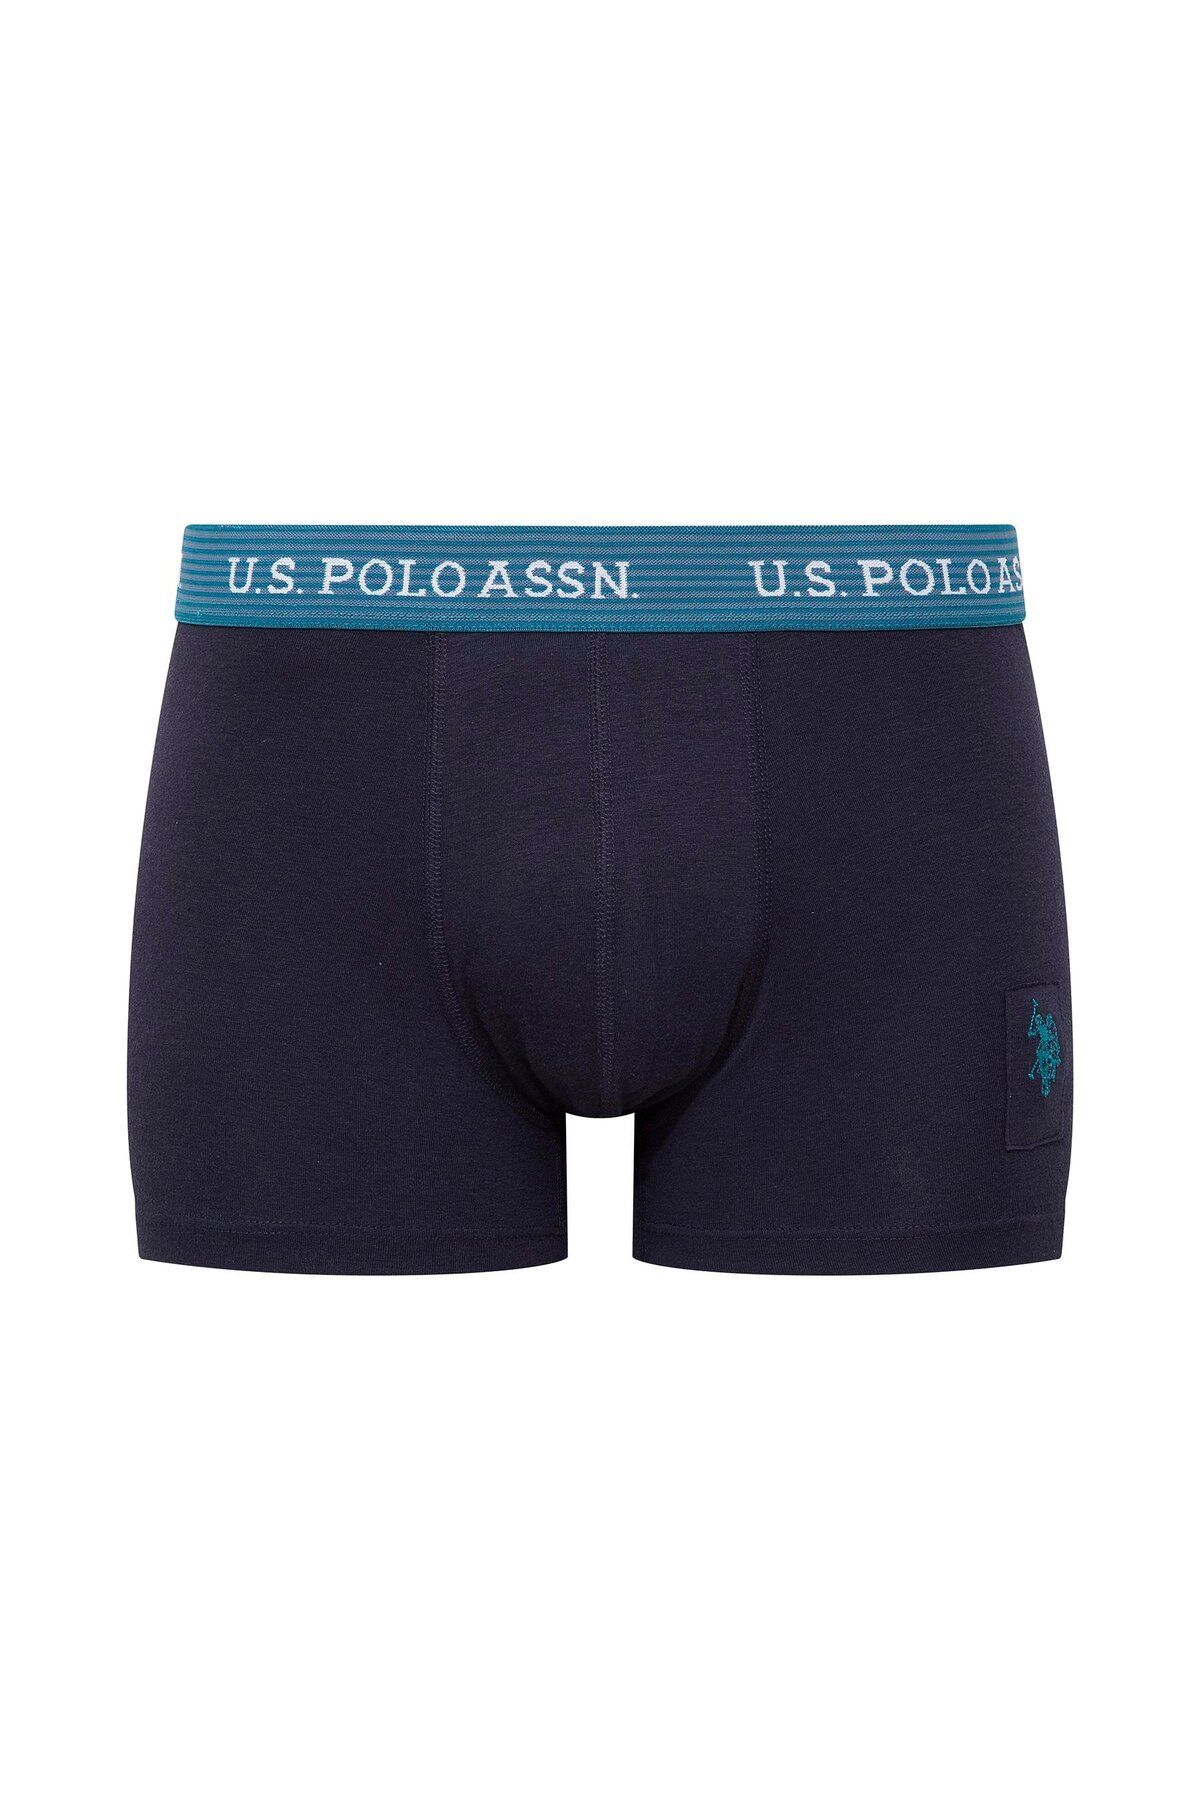 U.S. Polo Assn. U.S. Polo Assn. Erkek Baskılı 3'lü Boxer C.0.L.8.5.R.5.1